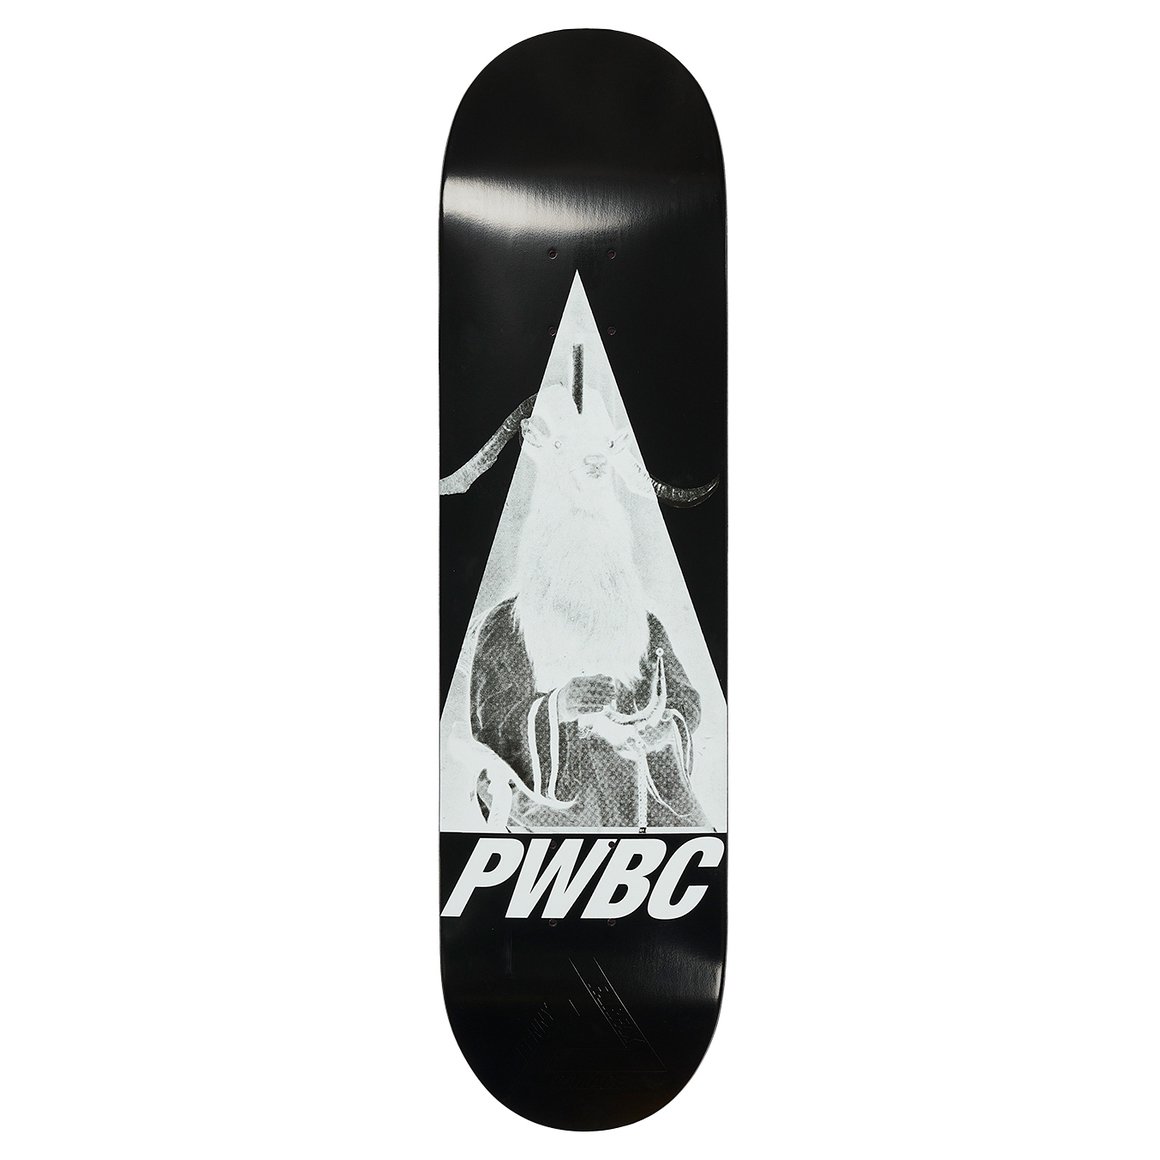 palace Skateboards(パレススケートボーズ)